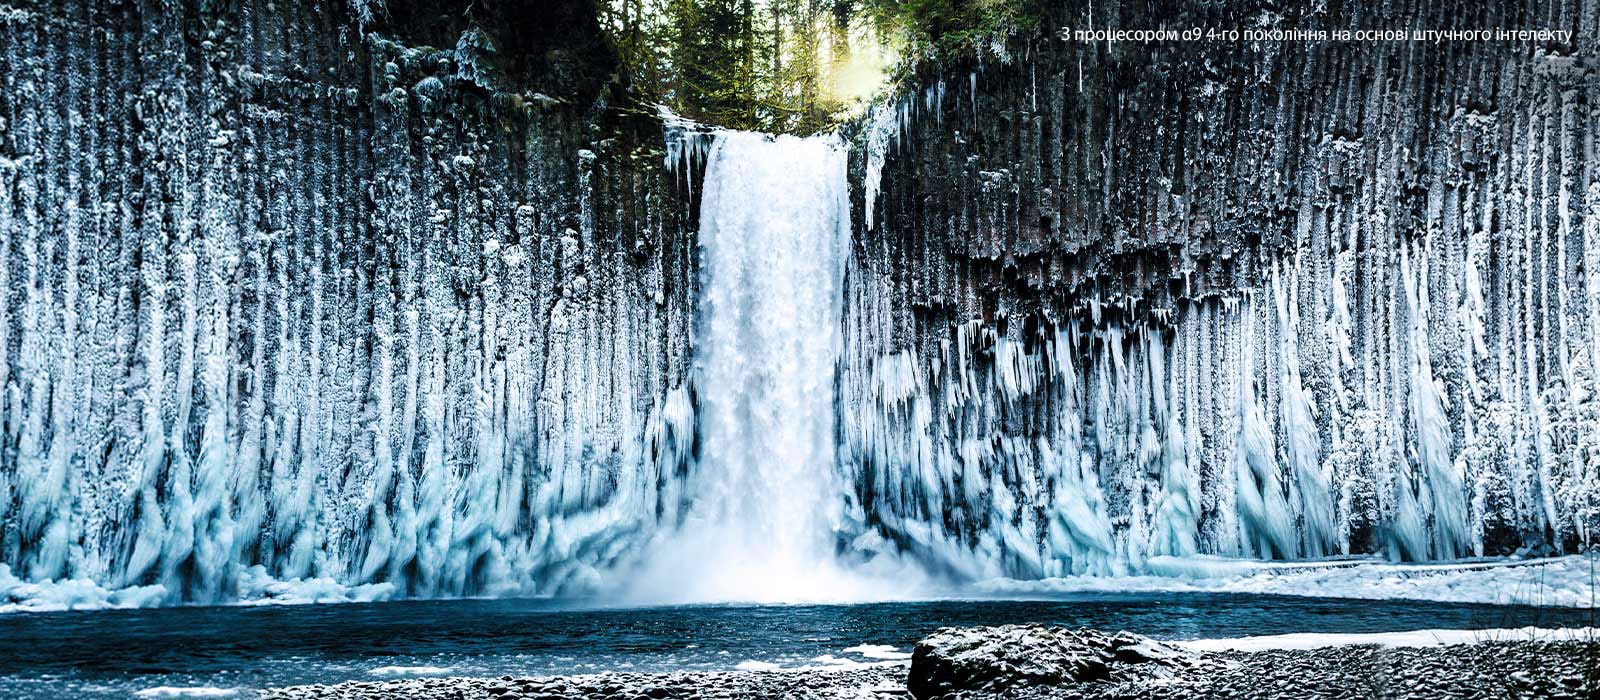 Повзунок порівняння якості зображення для замерзлого водоспаду в лісі.